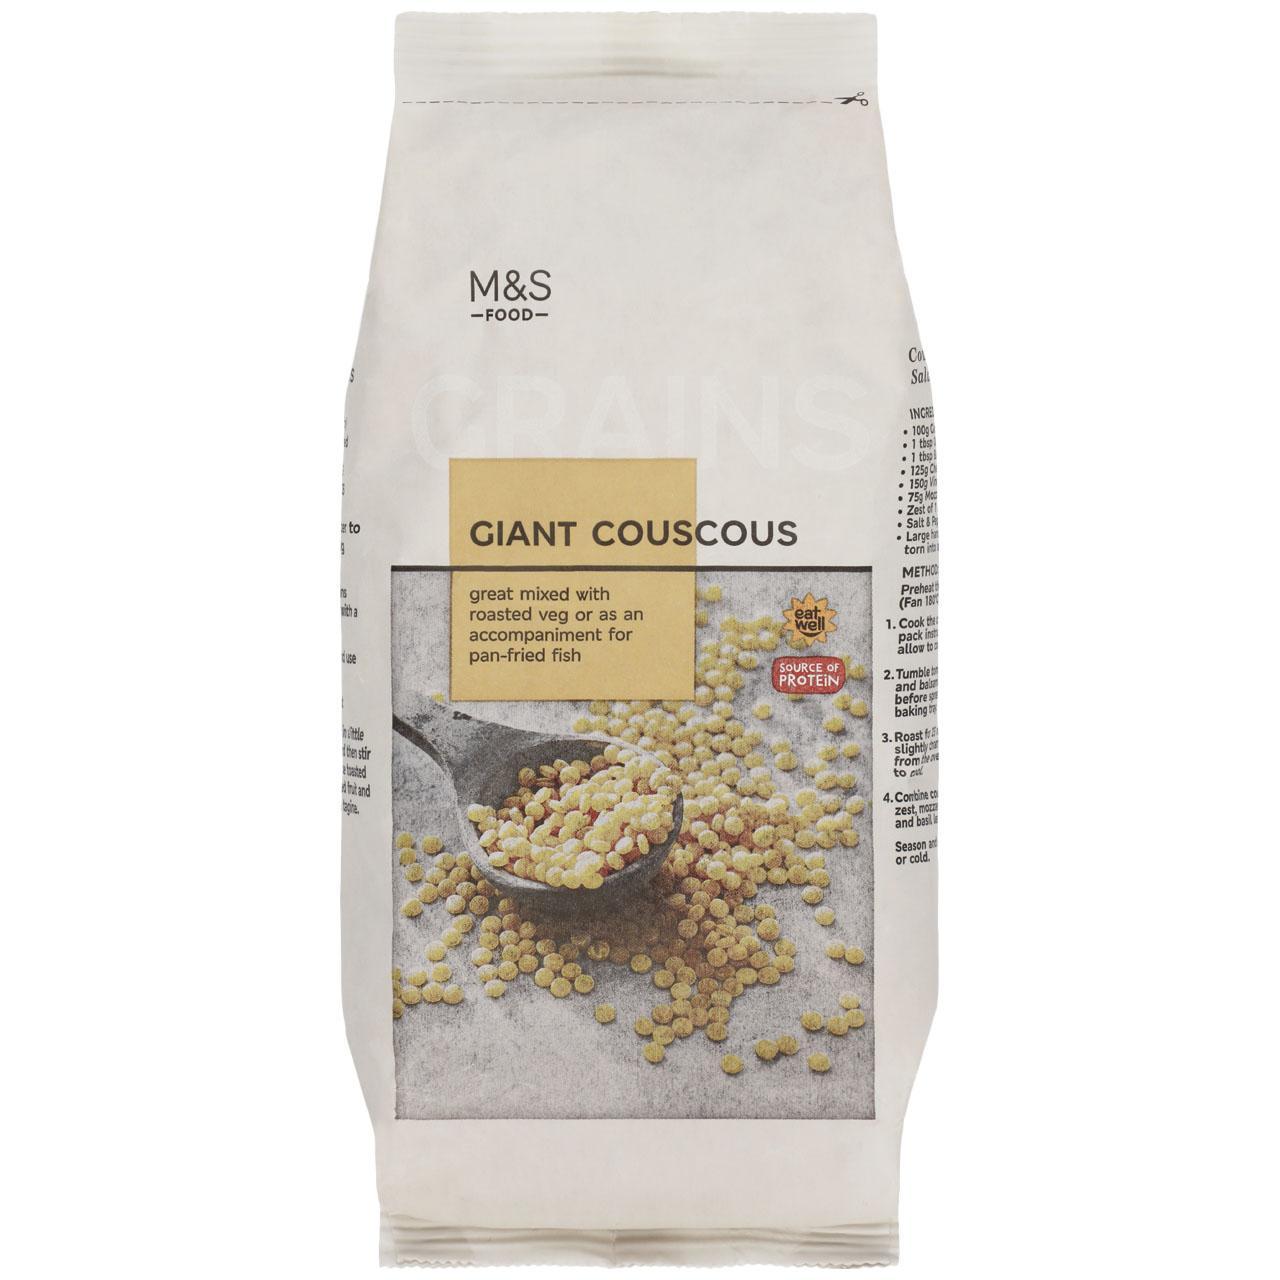 M&S Giant Couscous